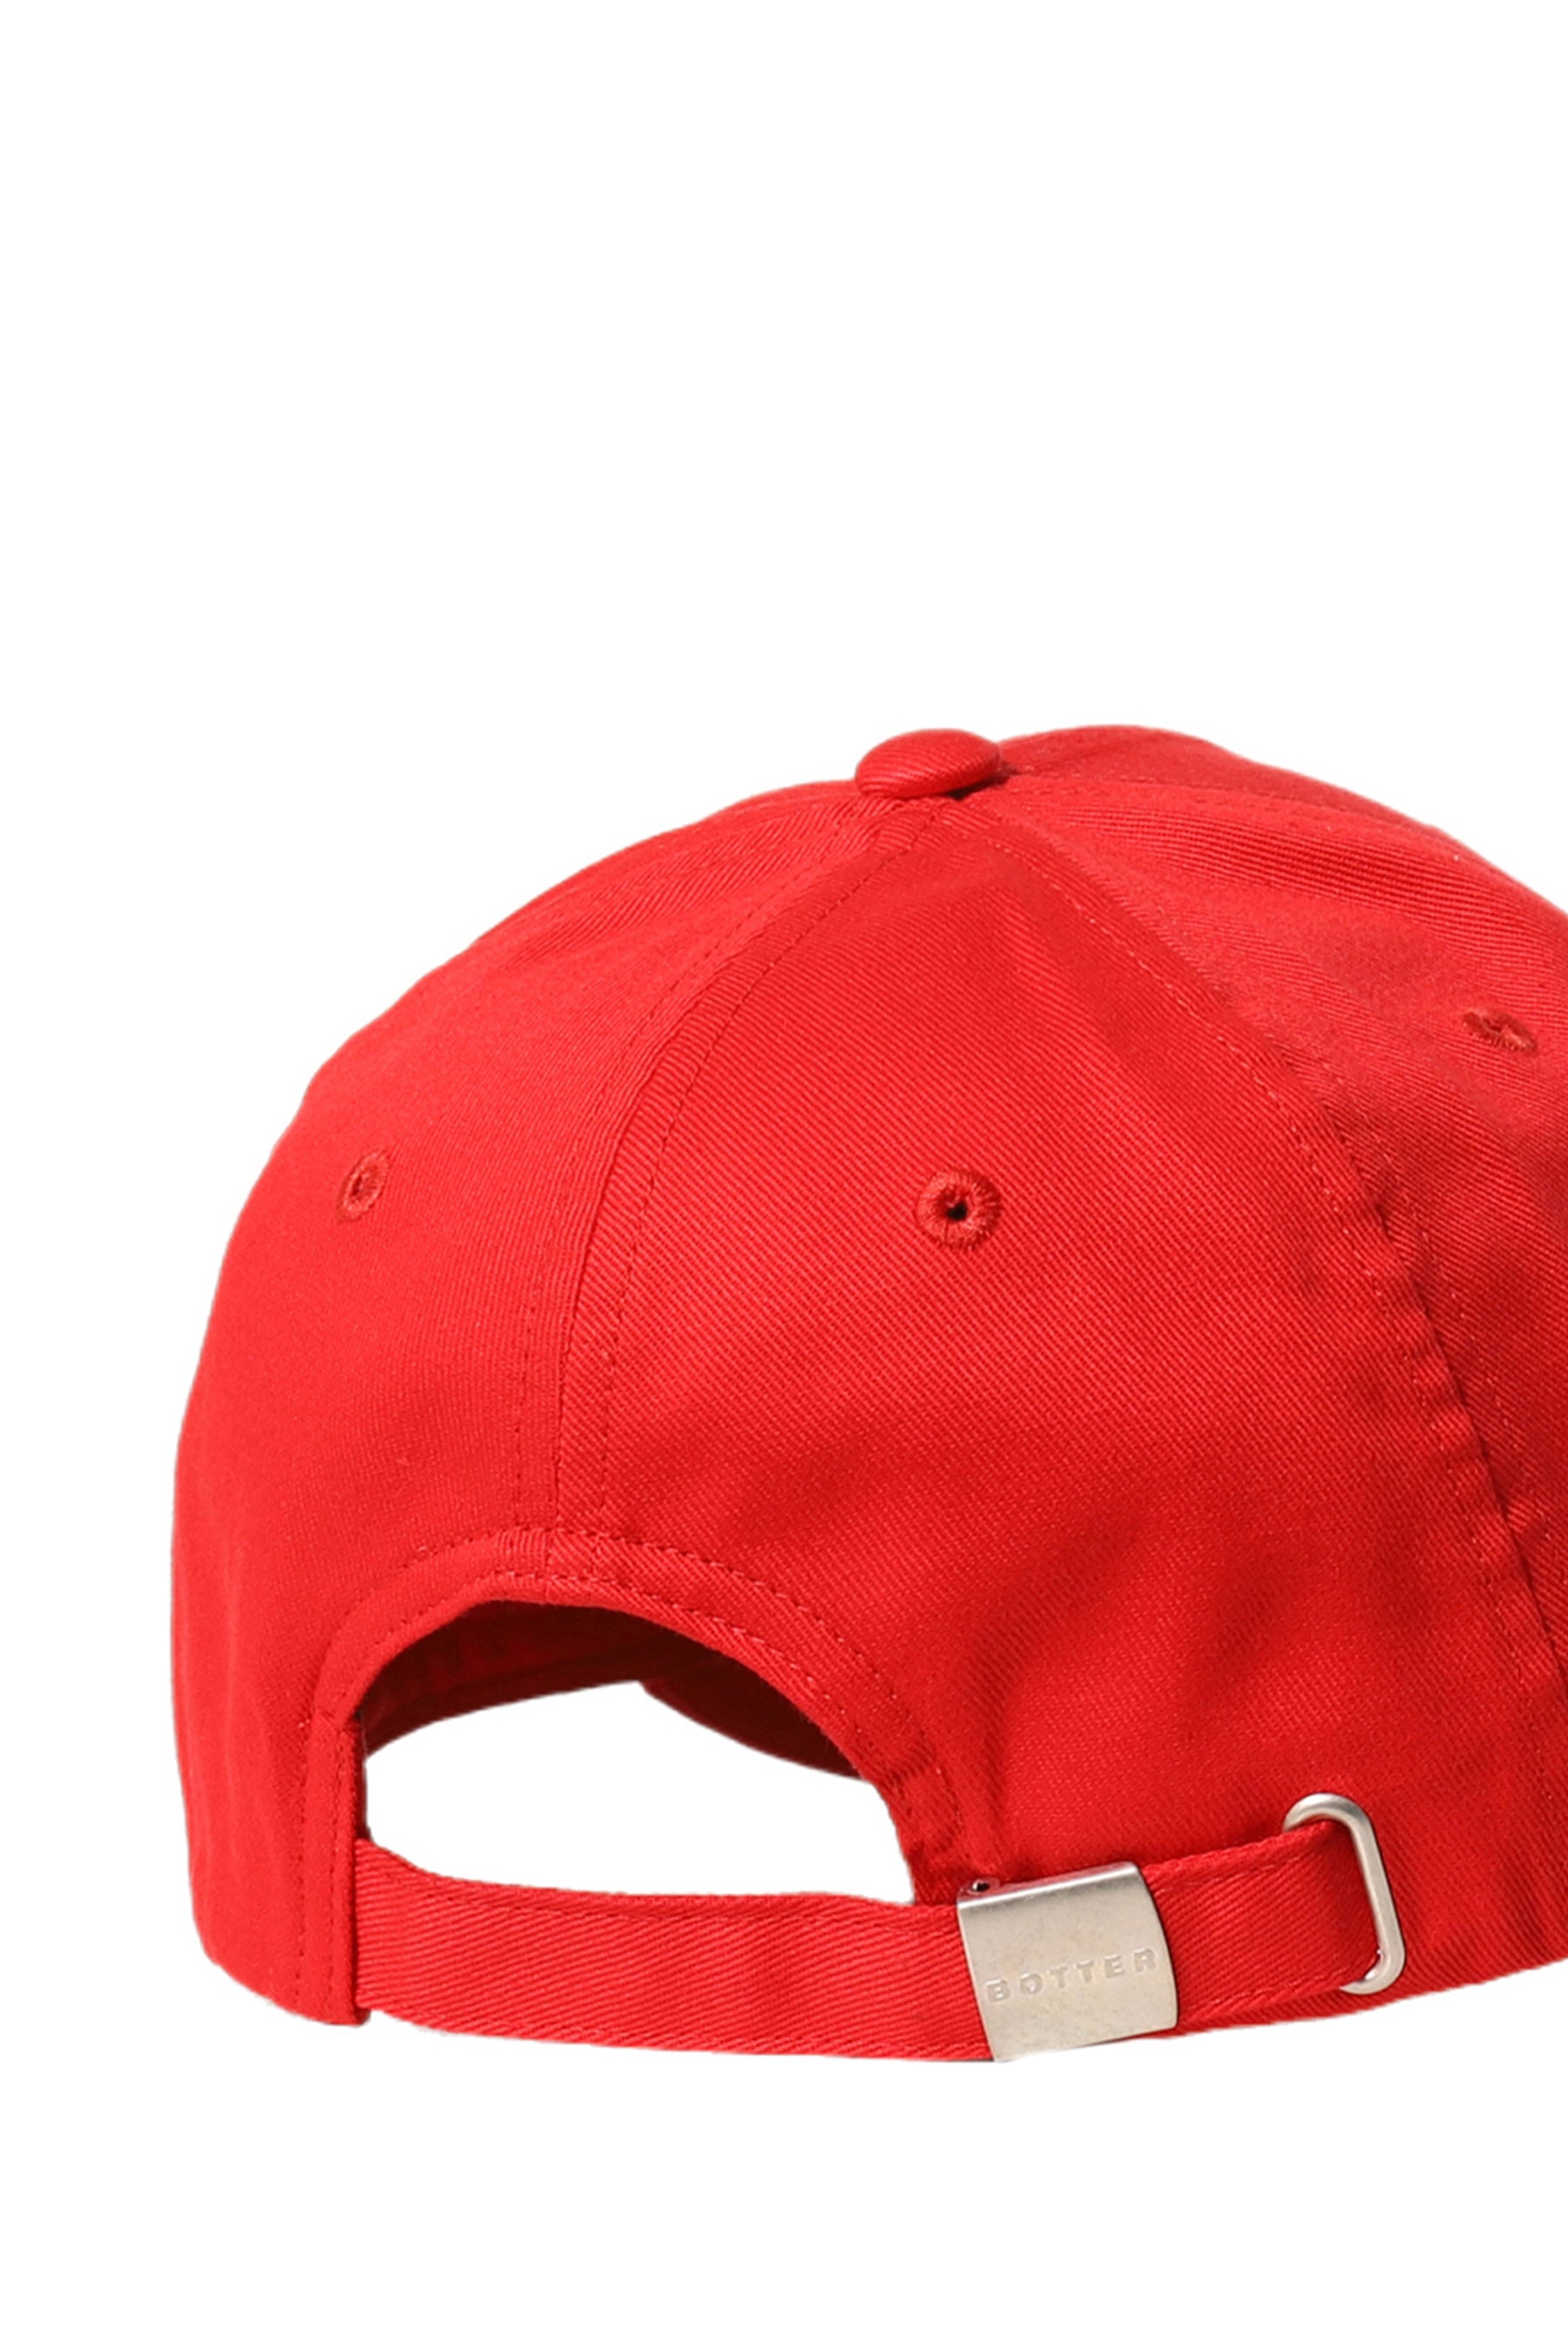 CLASSIC CAP / RED